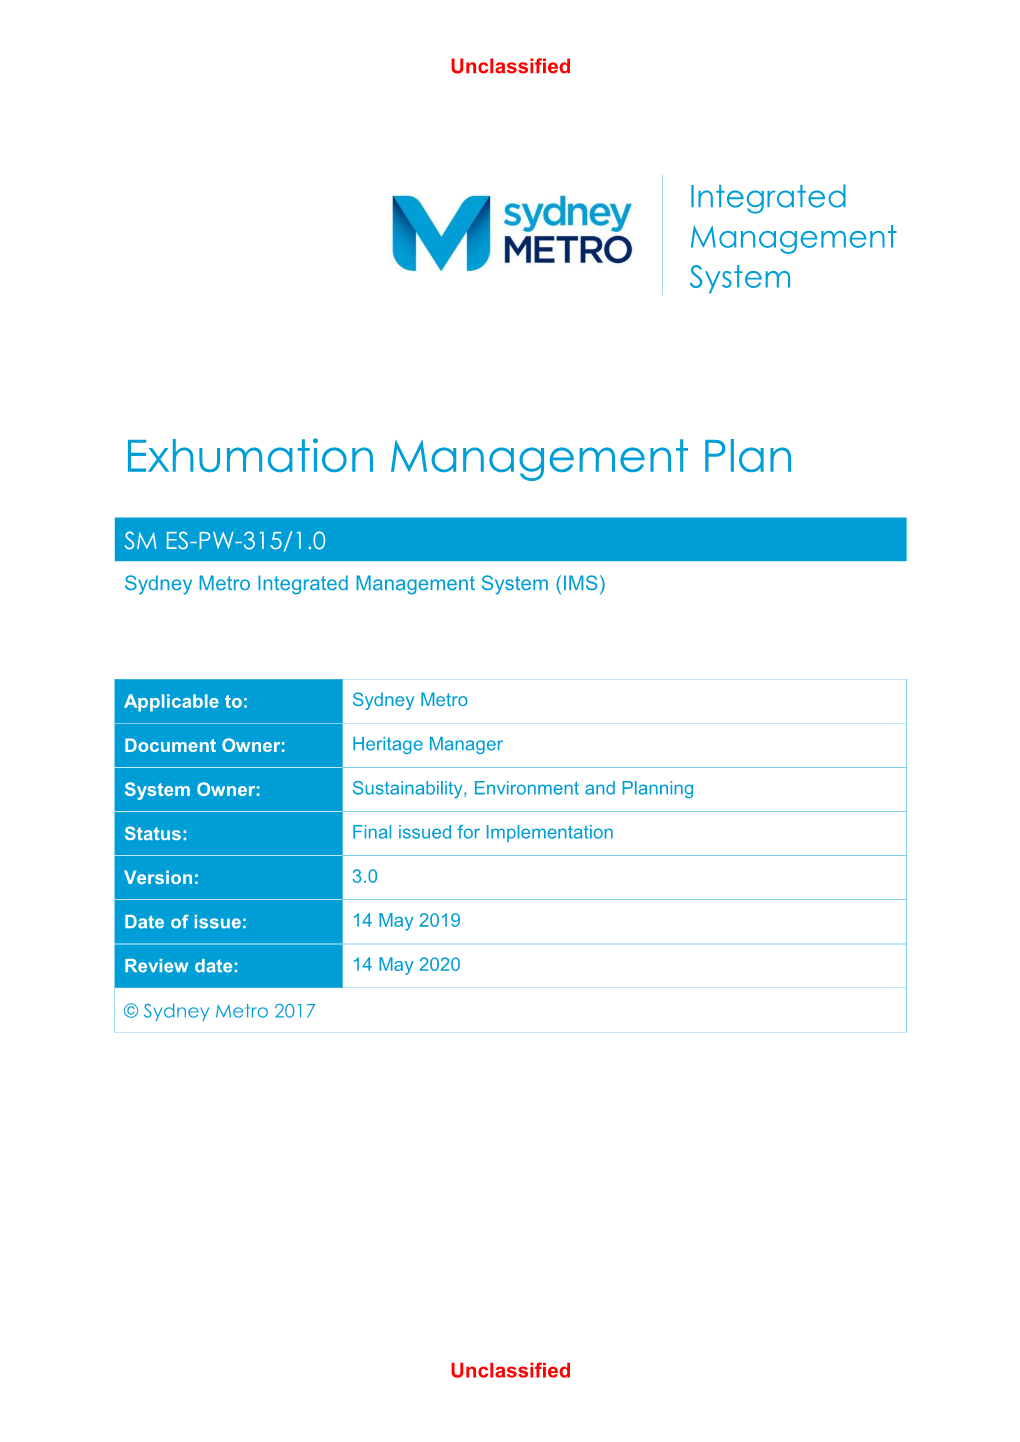 Sydney Metro Exhumation Management Plan